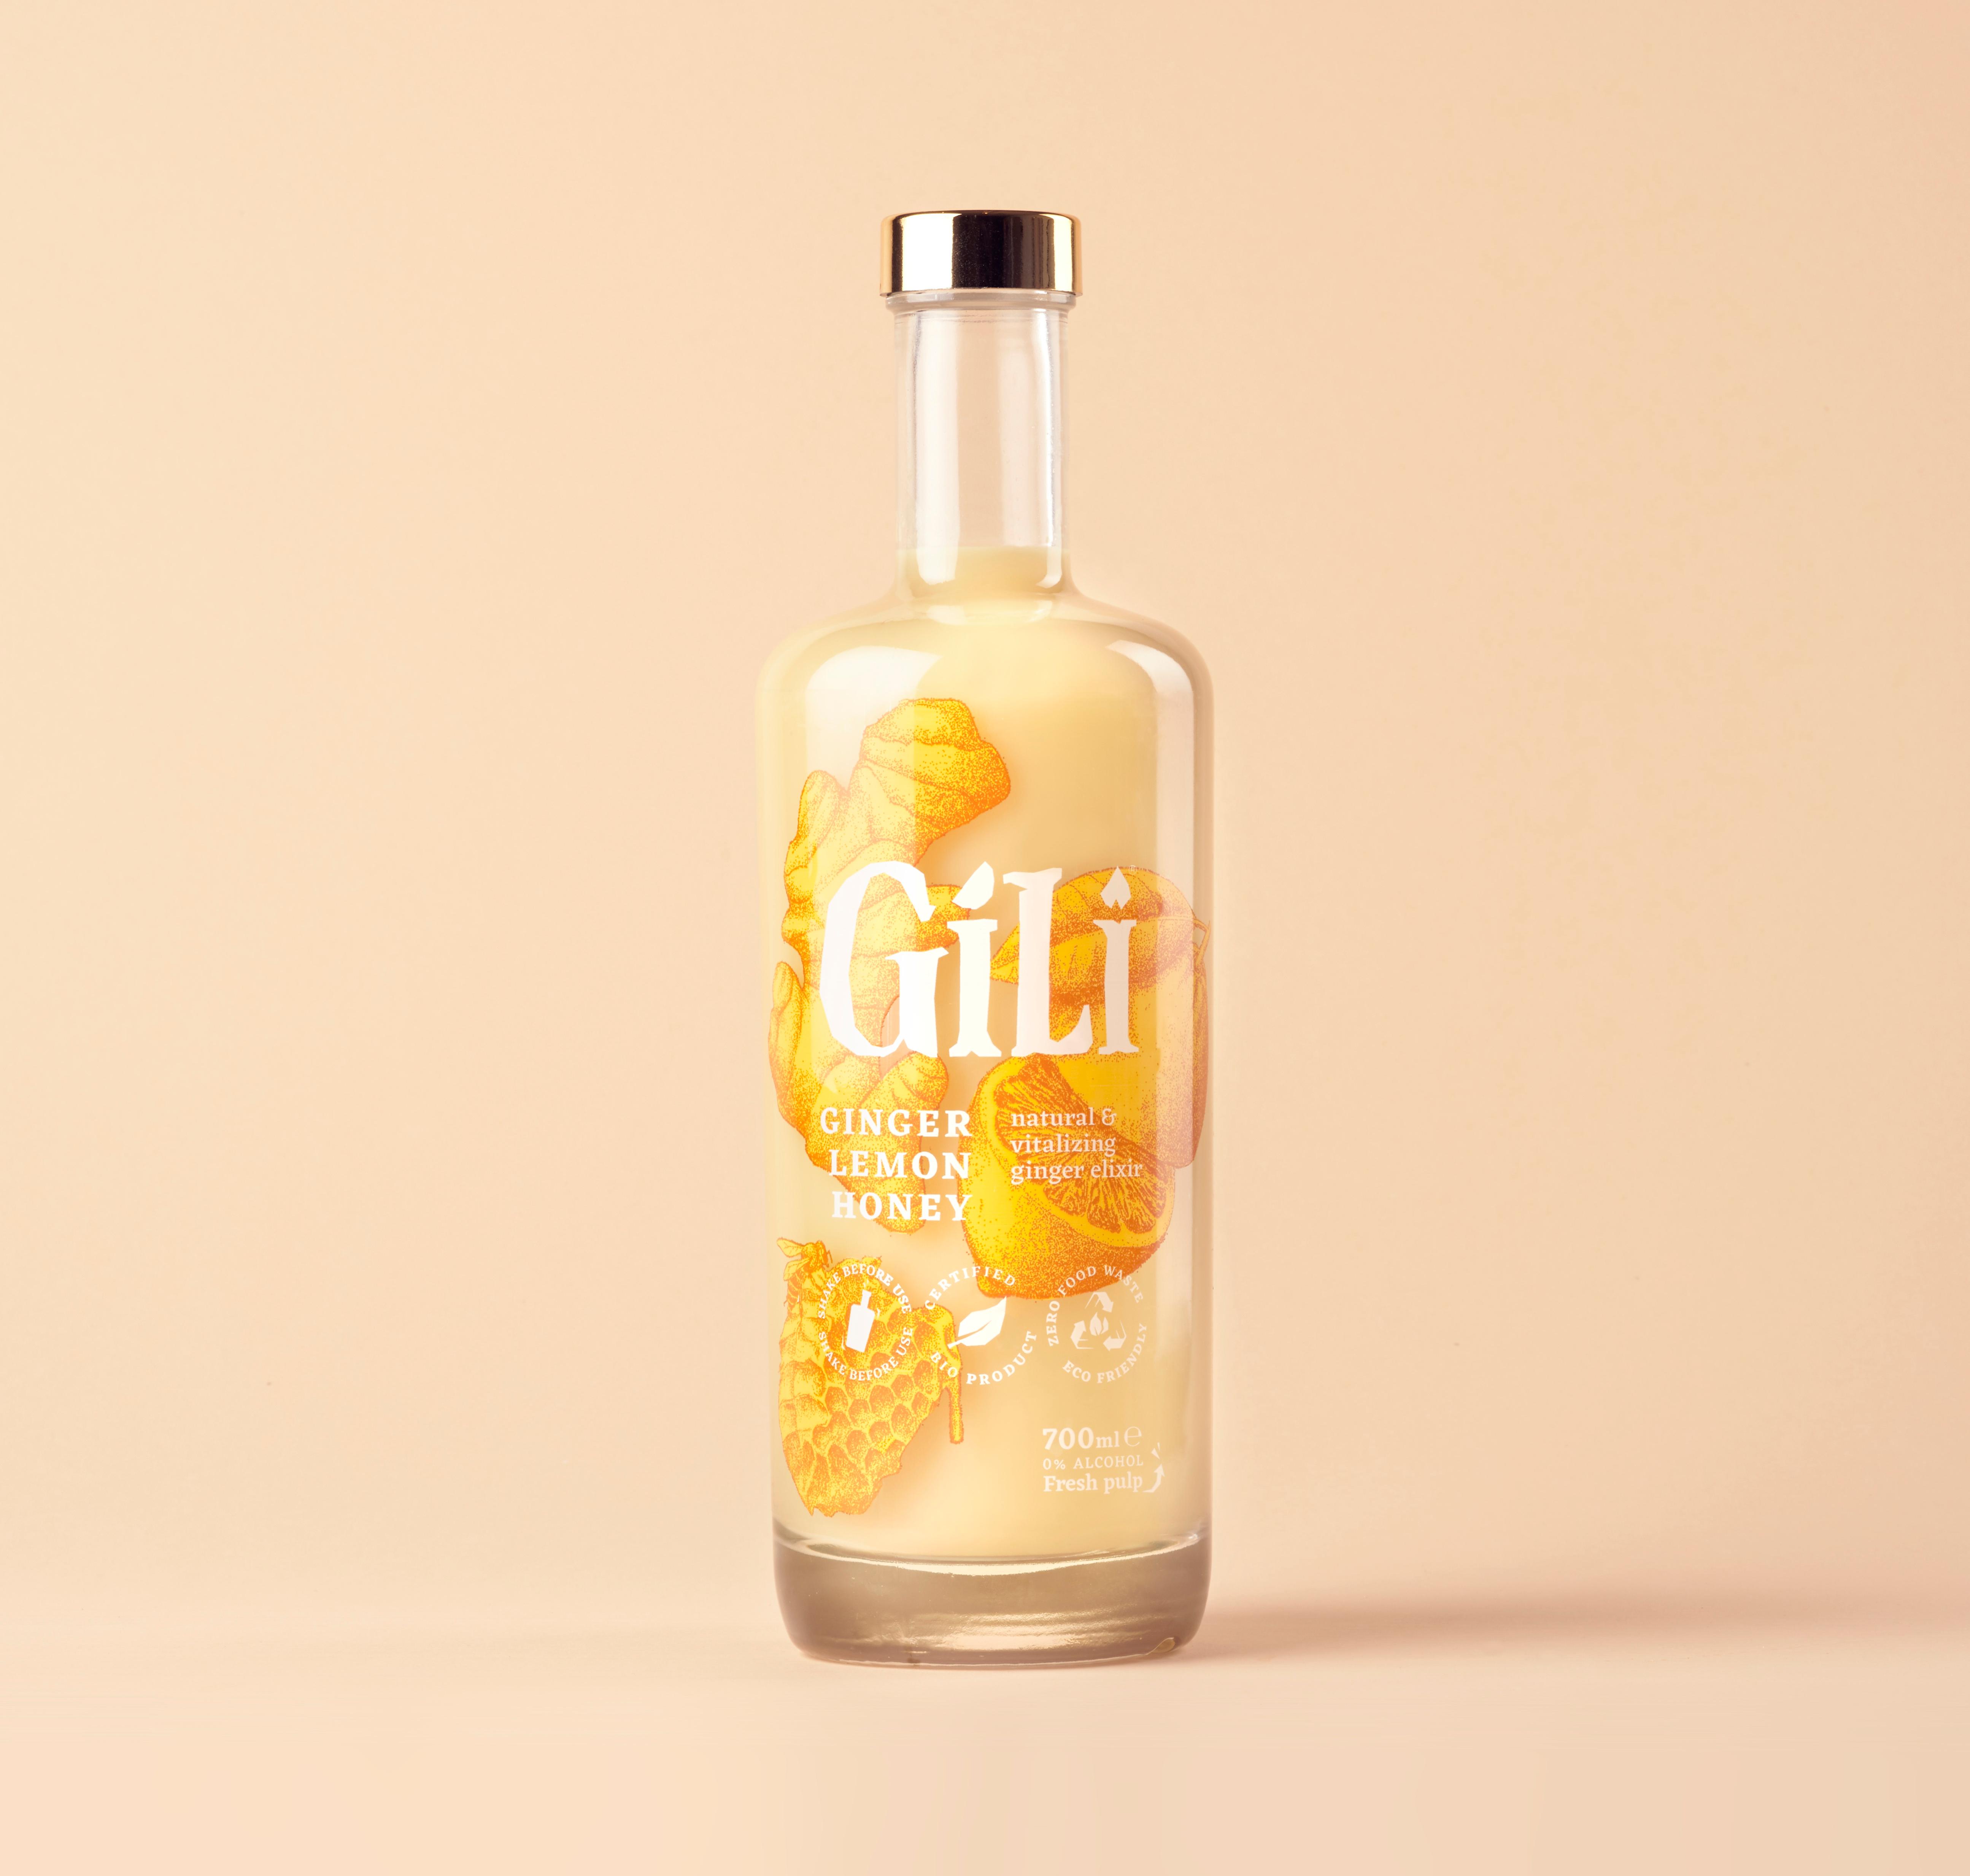 Gili Natural & Vitalizing Ginger Elixir 700ml